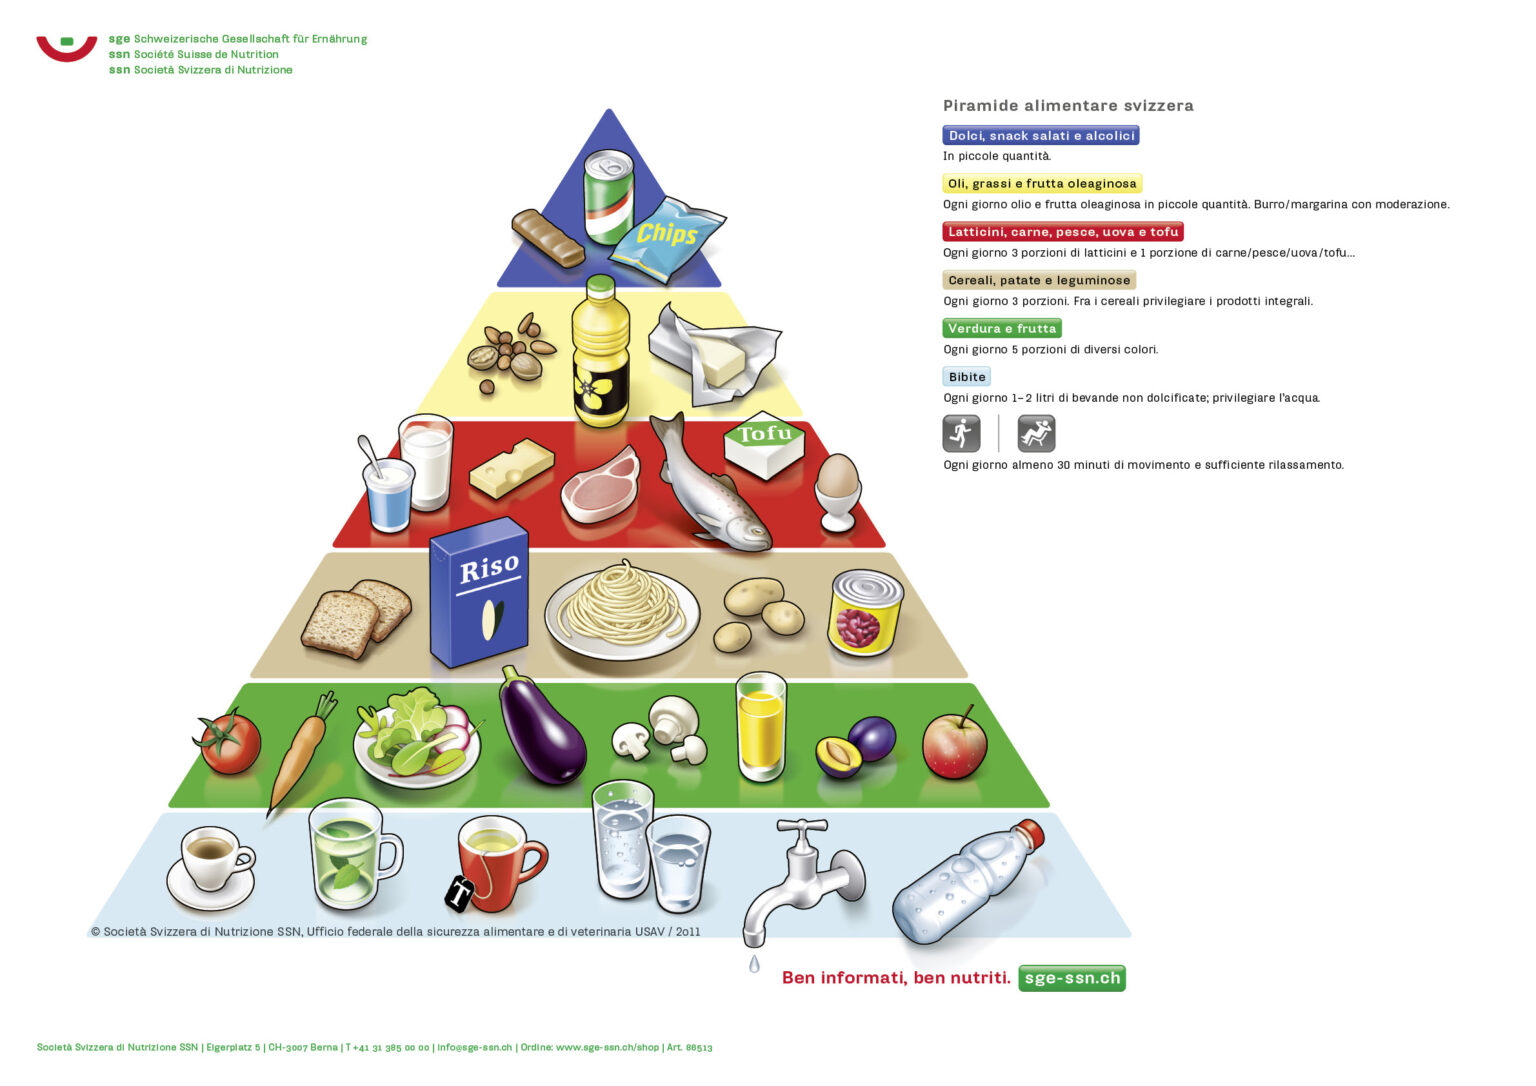 Poster Piramide Alimentare Formato A1 Schweizerische Gesellschaft Für Ernährung 4814